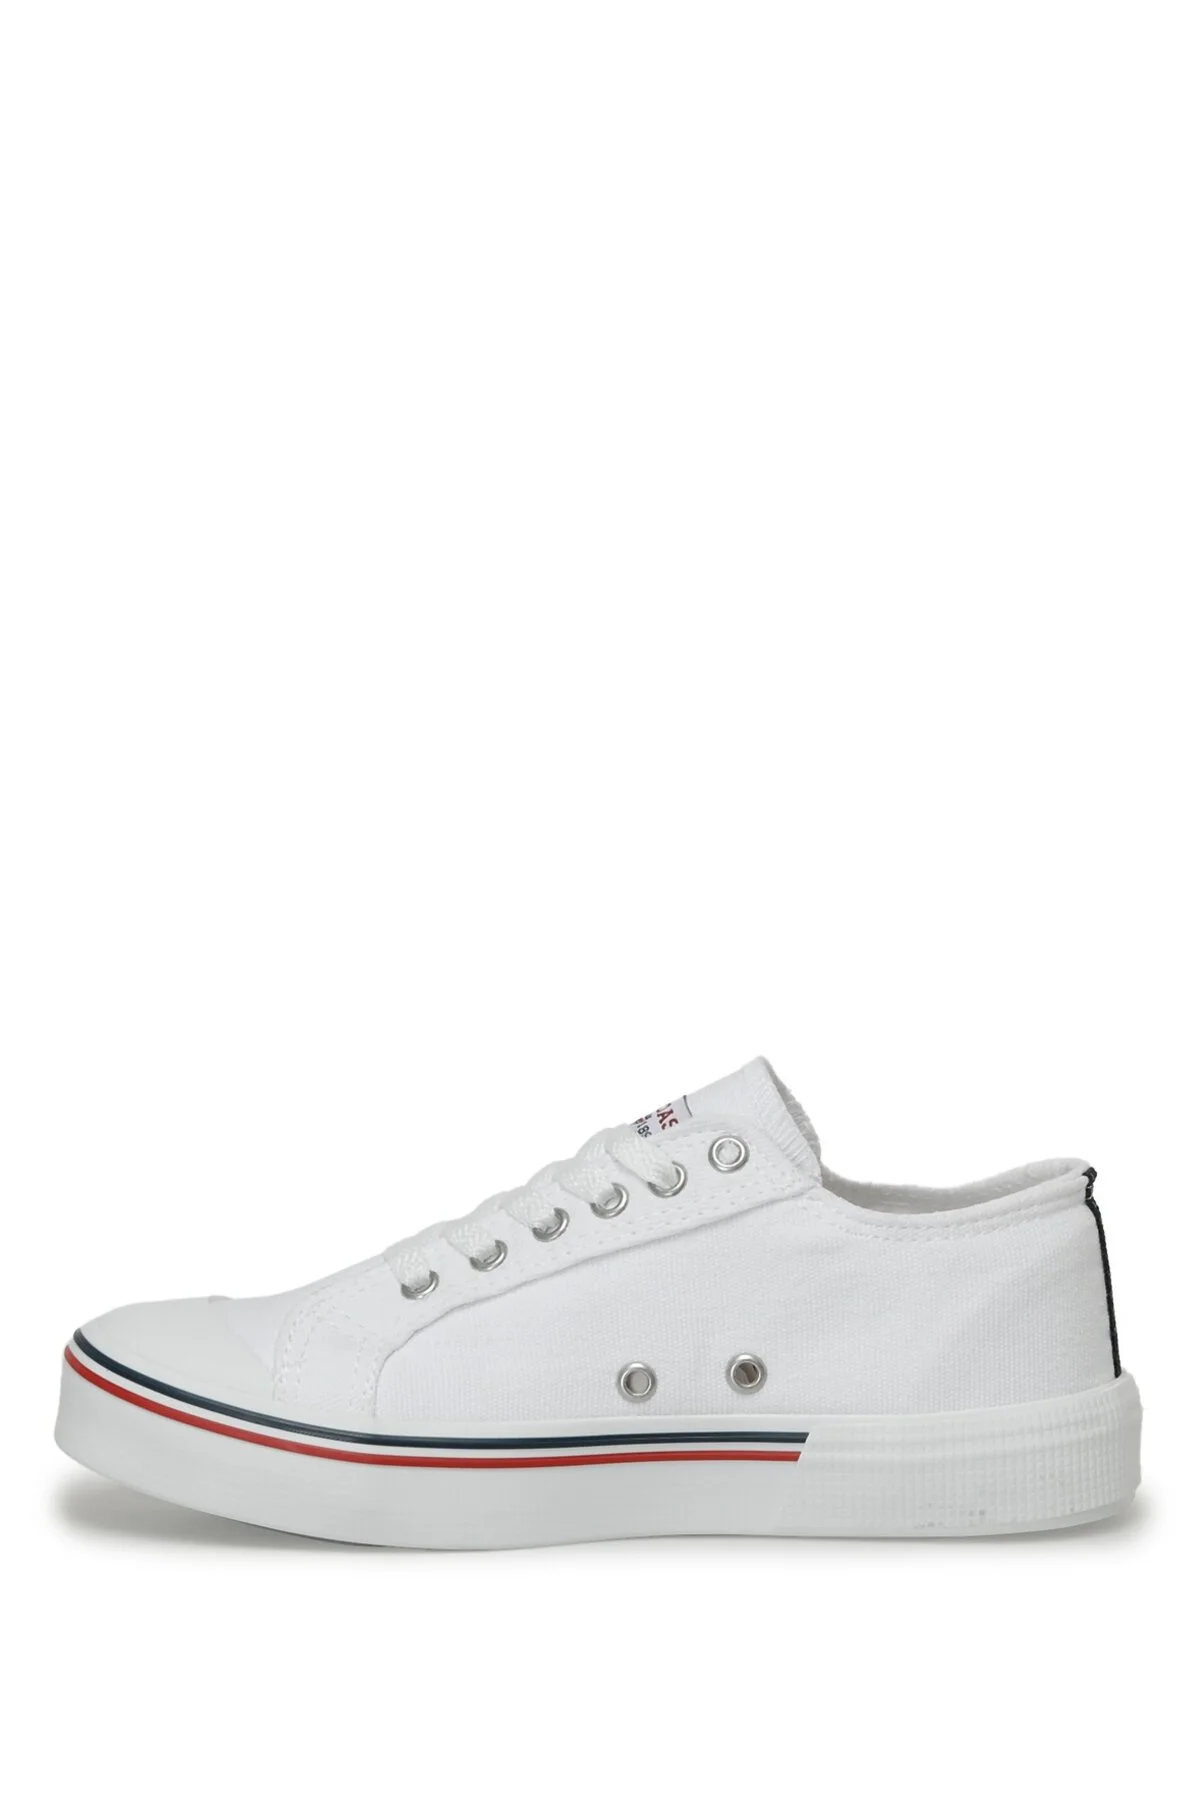 PENELOPE 3FX Beyaz Kadın Sneaker-Beyaz - Thumbnail